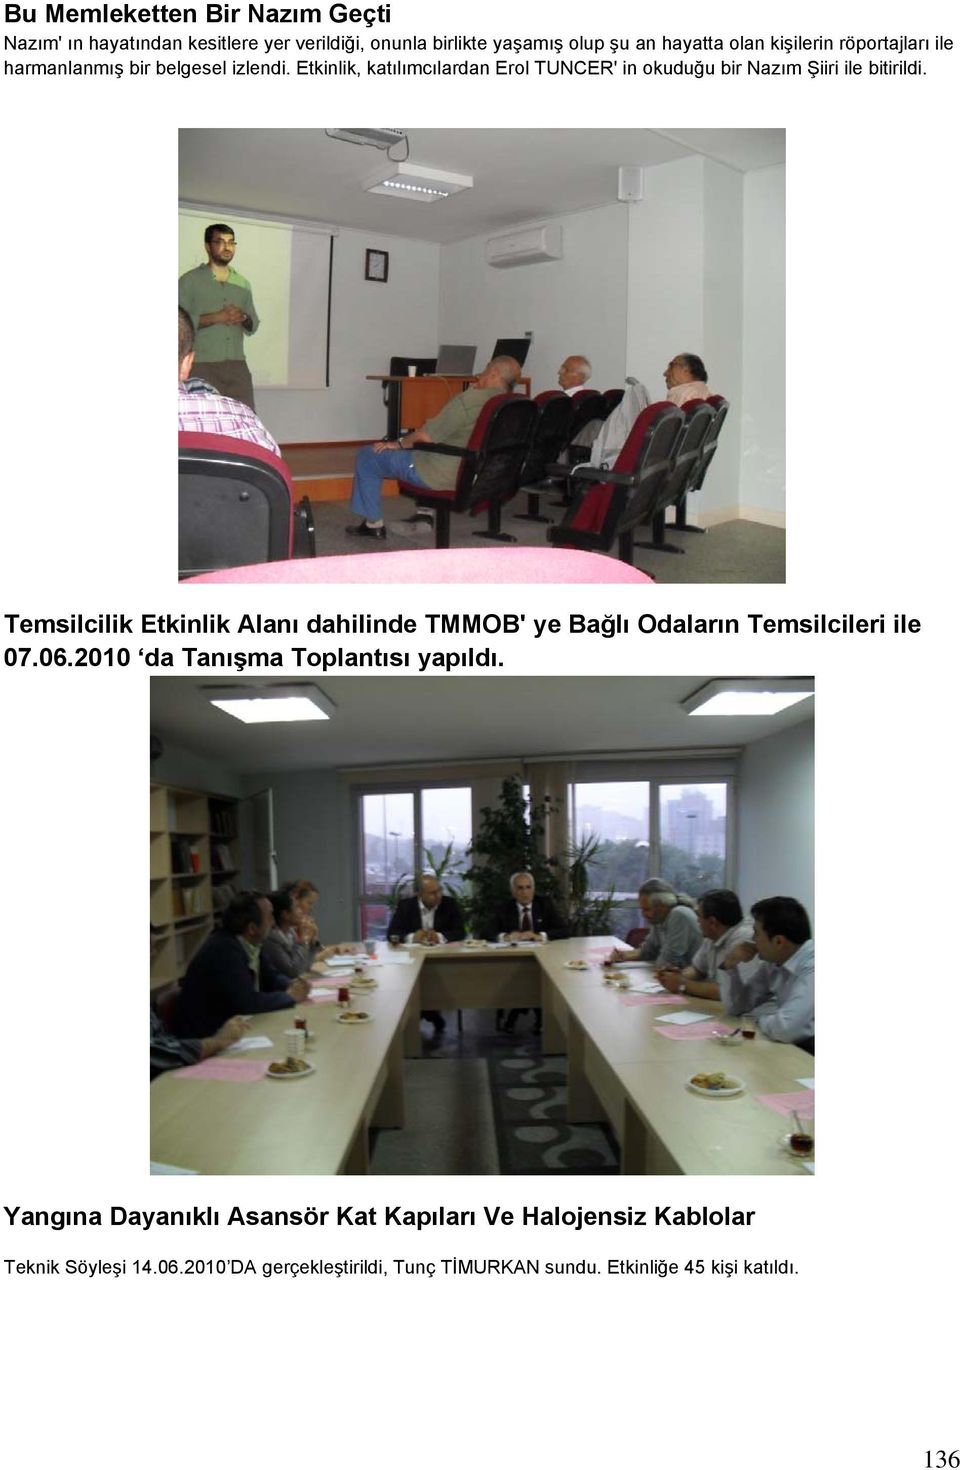 Temsilcilik Etkinlik Alanı dahilinde TMMOB' ye Bağlı Odaların Temsilcileri ile 07.06.2010 da Tanışma Toplantısı yapıldı.